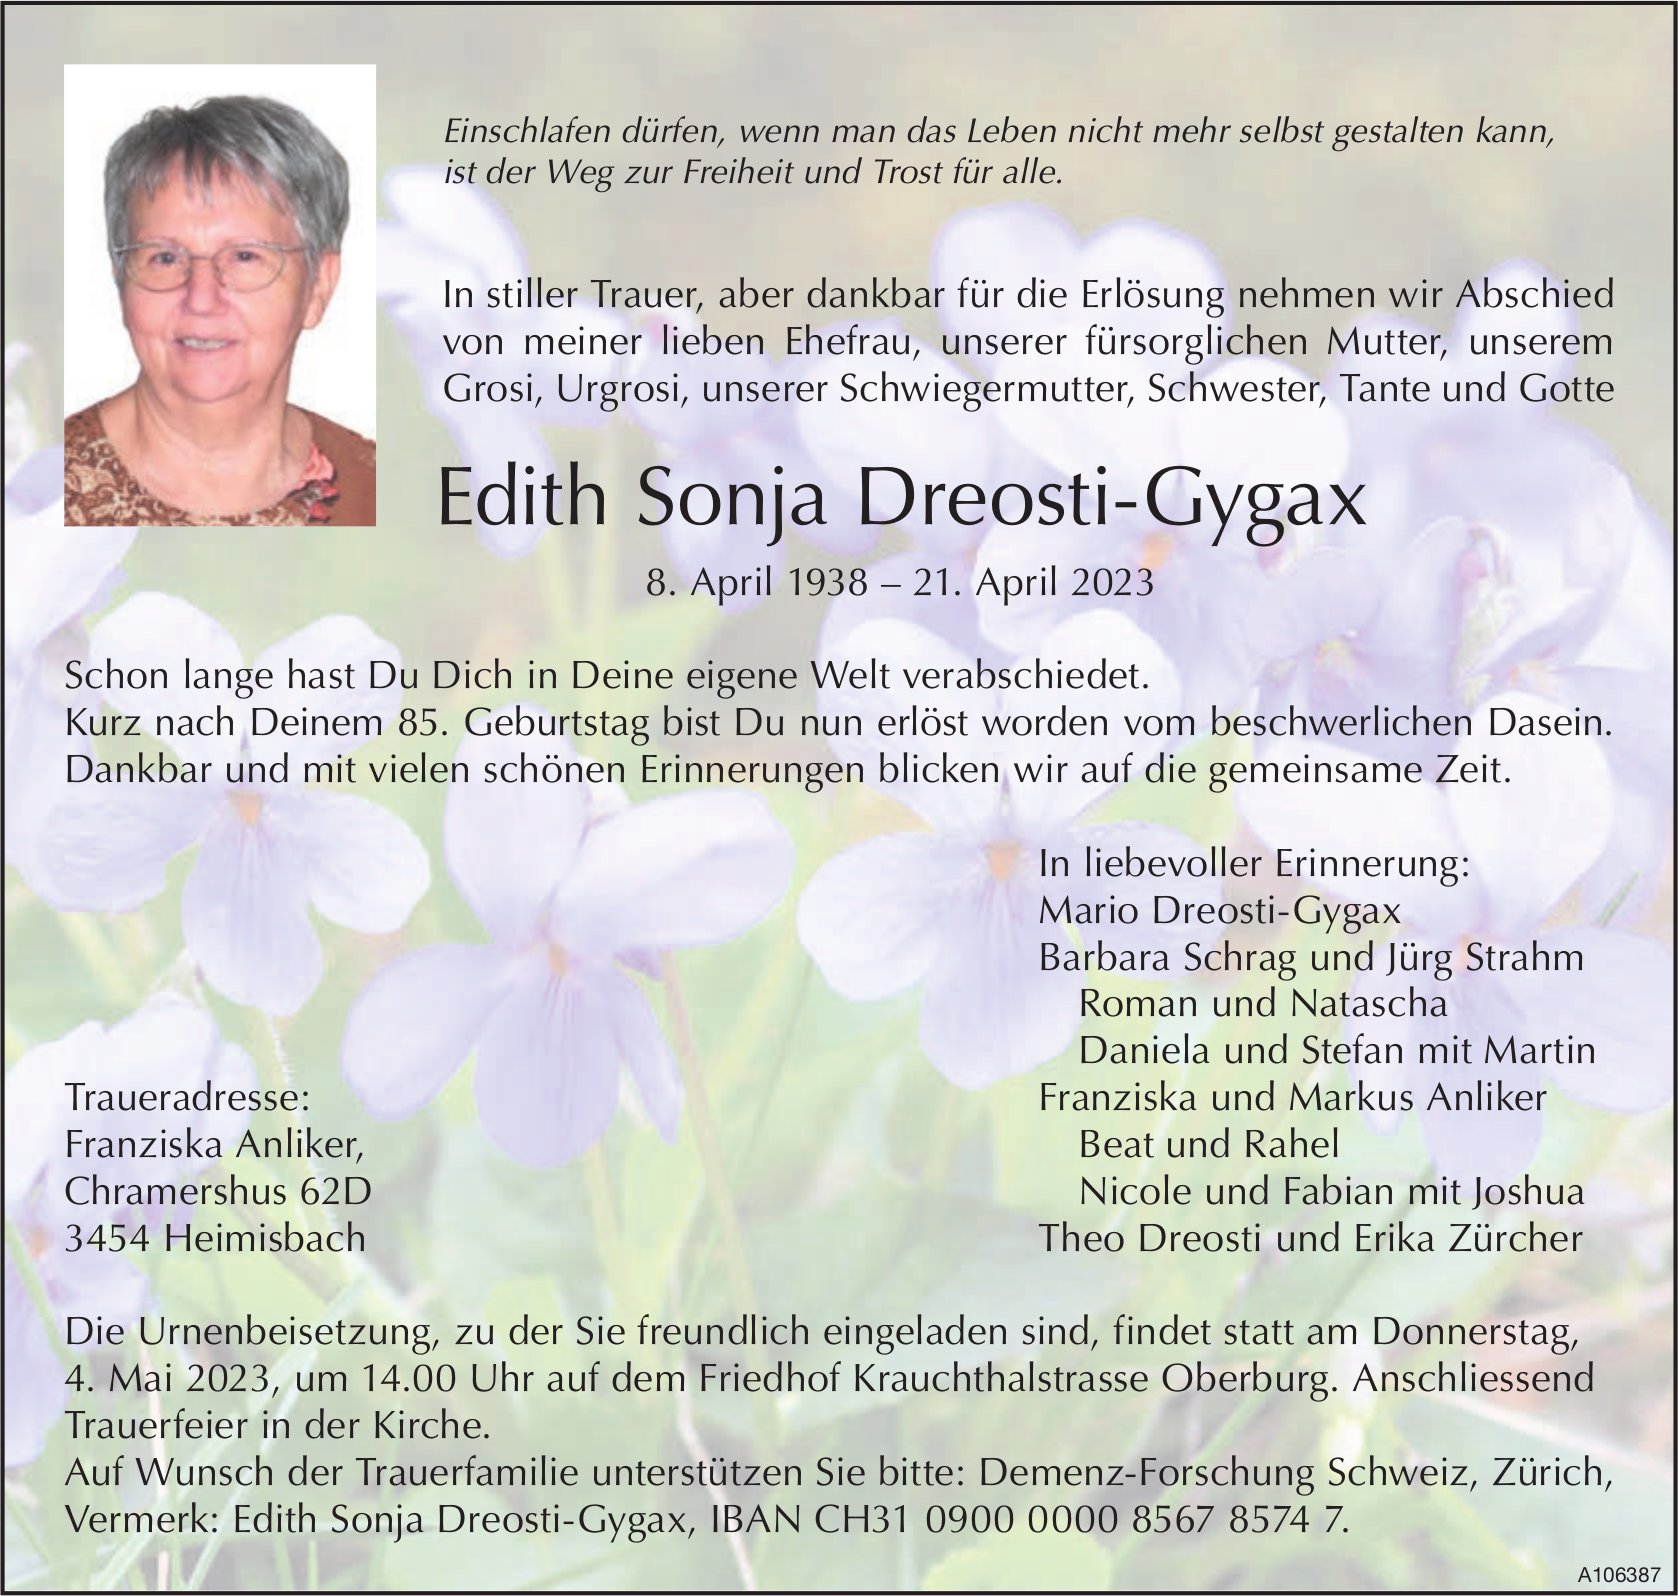 Edith Sonja Dreosti-Gygax, April 2023 / TA